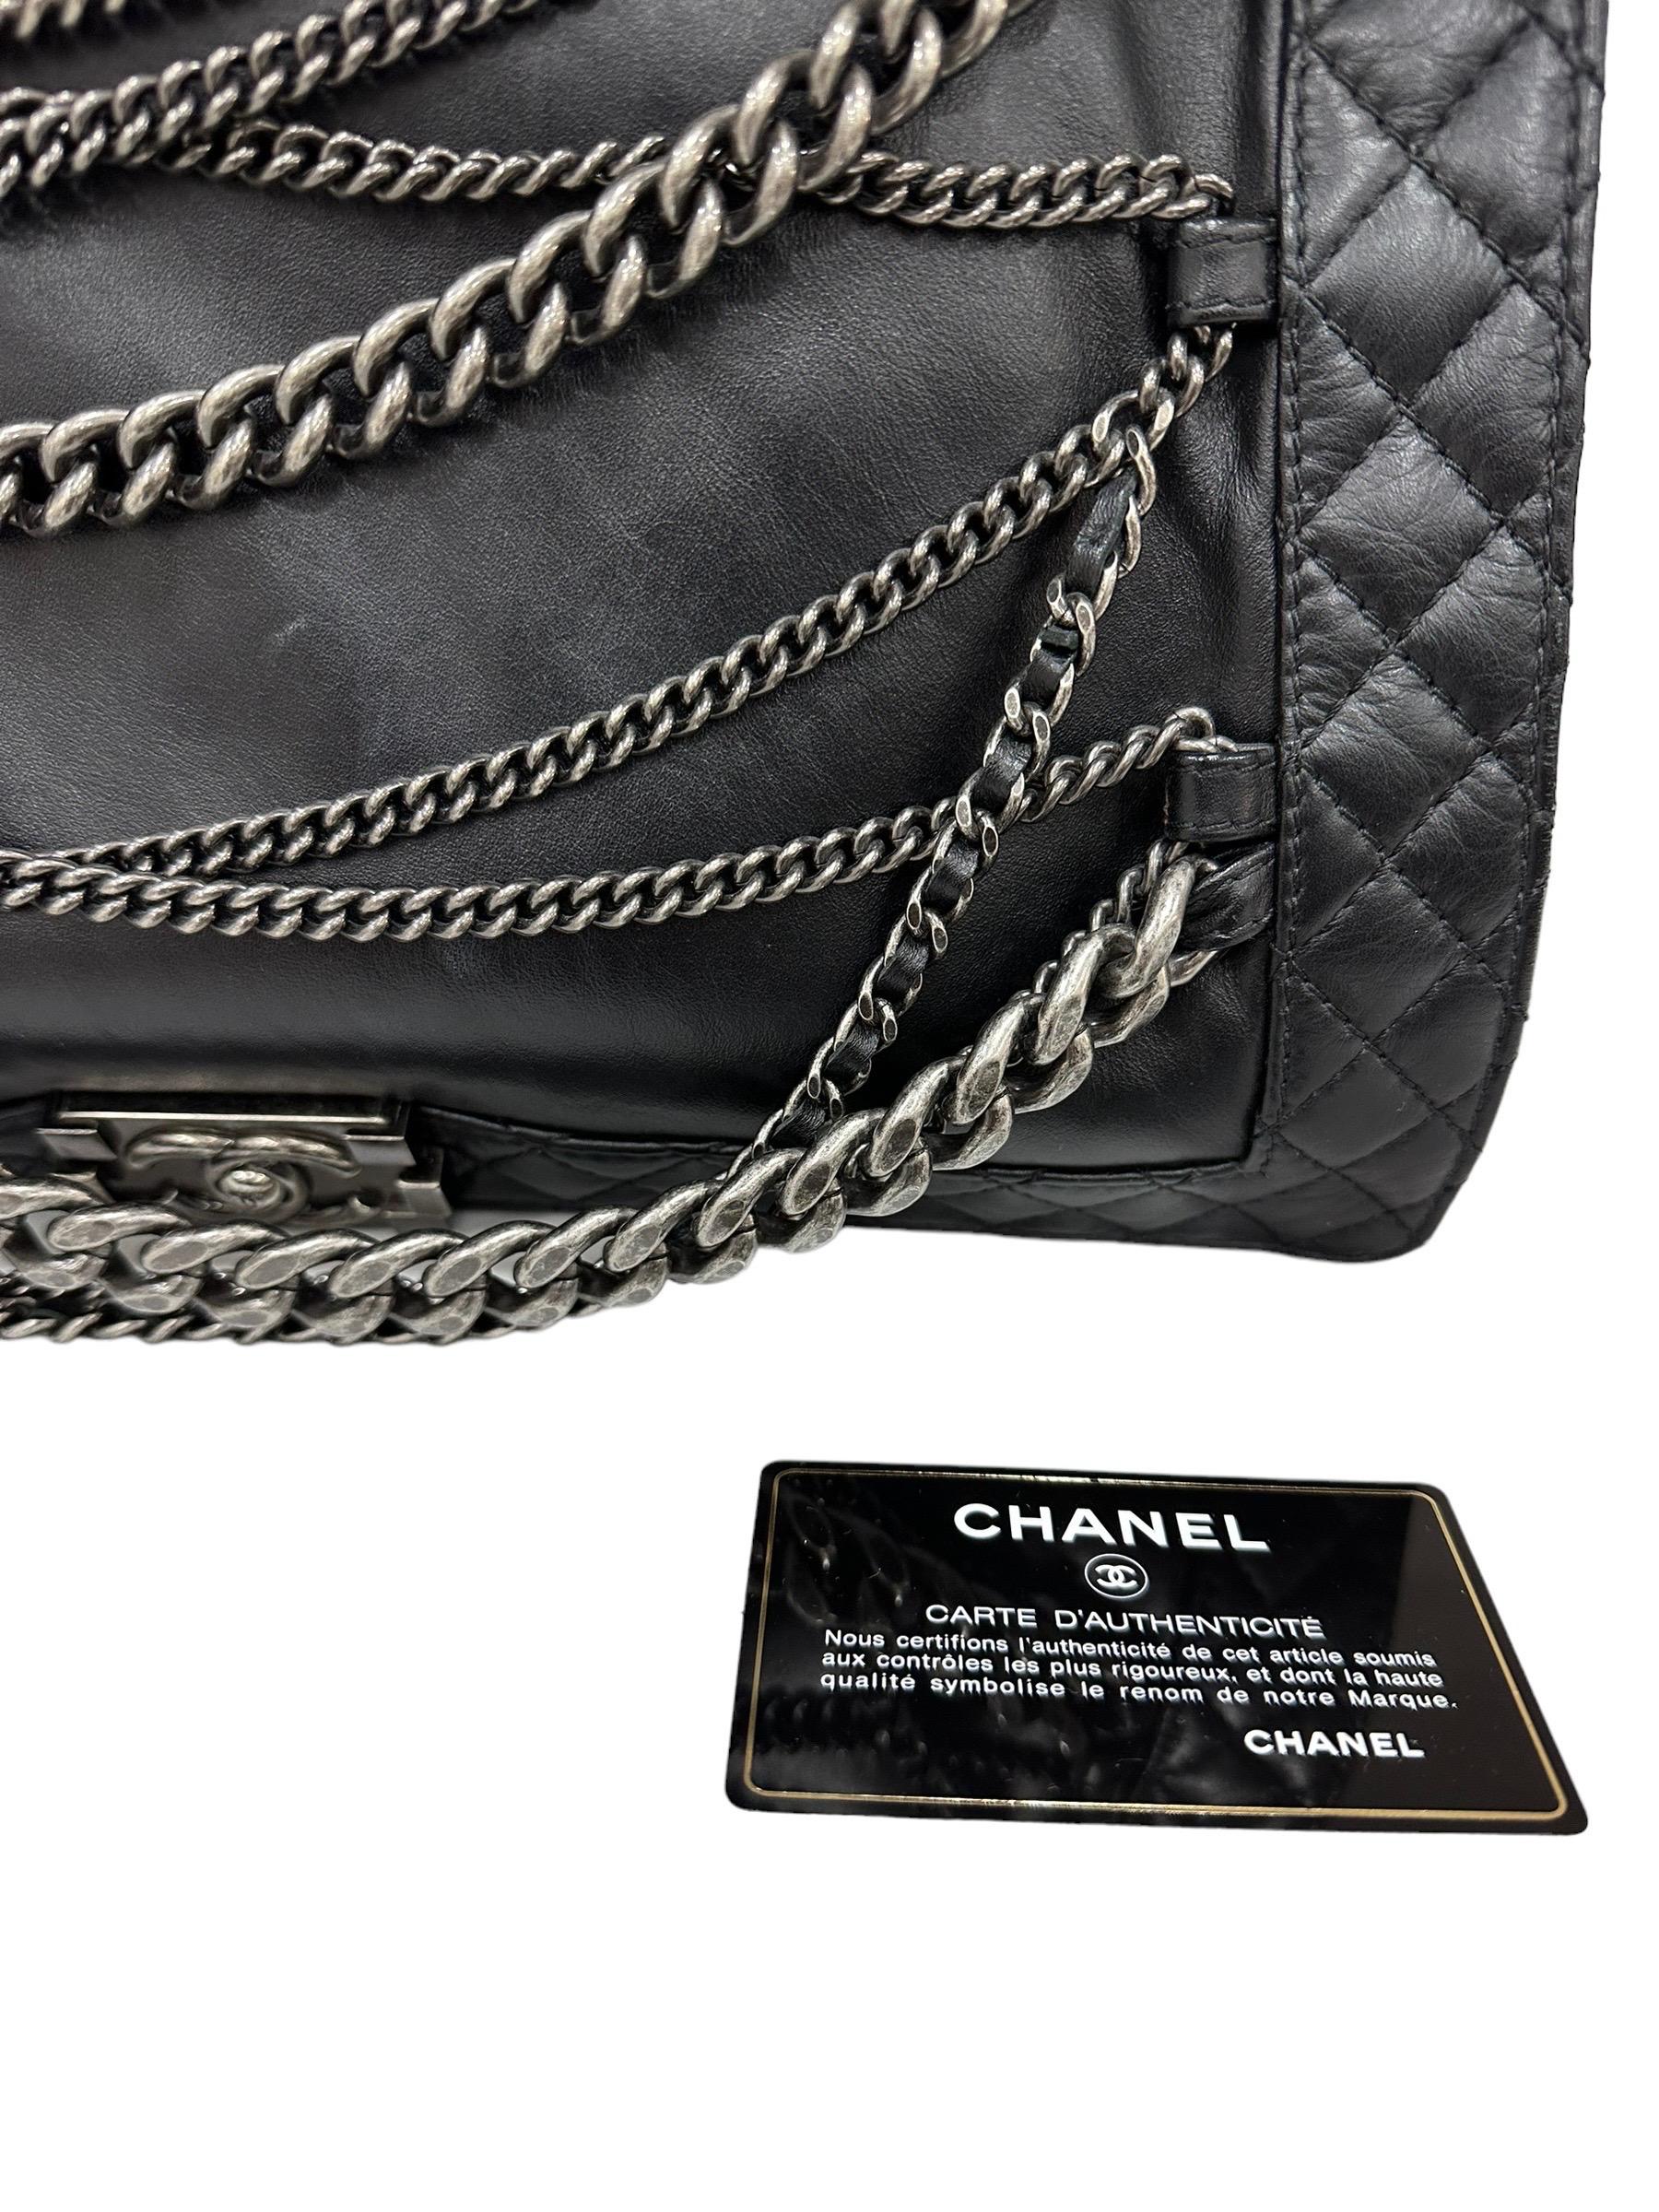 2014 Chanel Boy XL Limited Edition Shoulder Bag Multi Chains 10